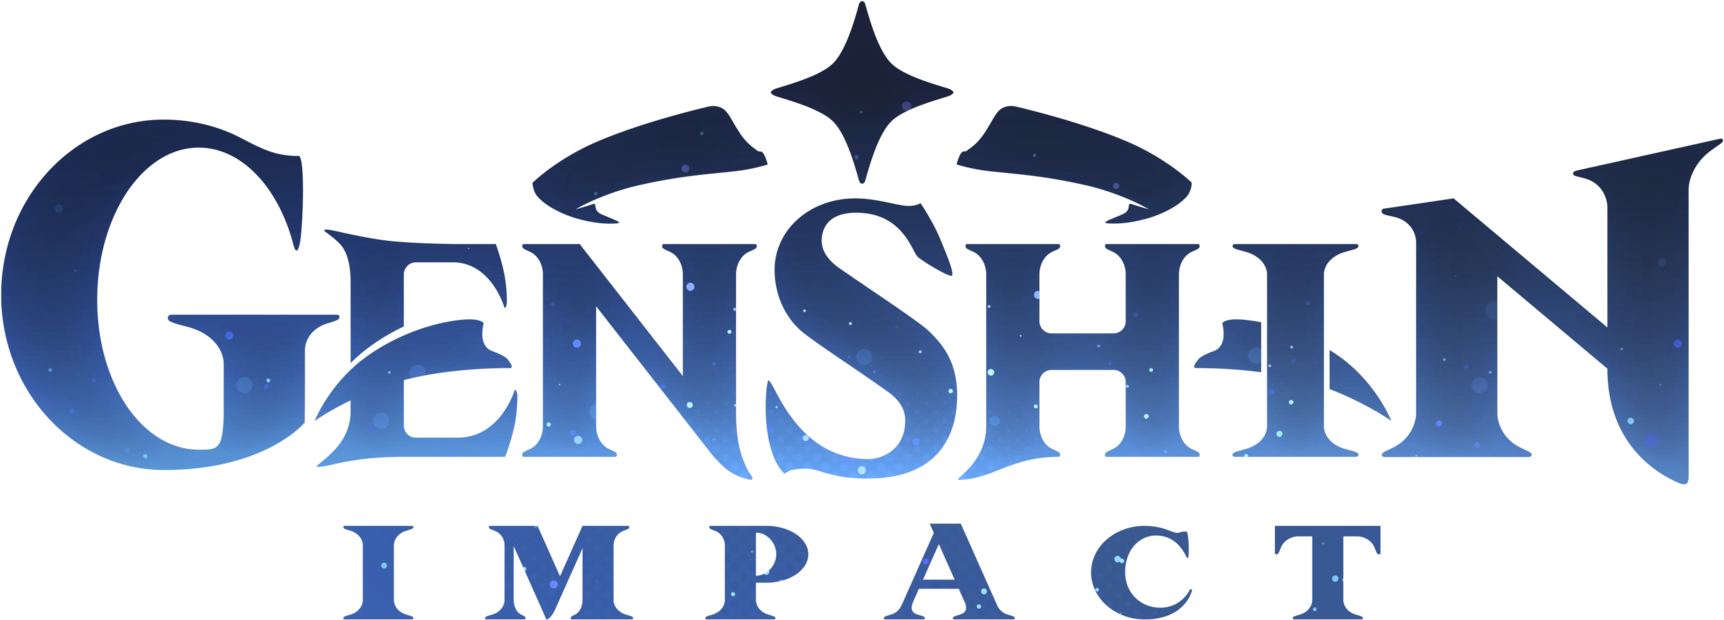 Genshin Impact logotip